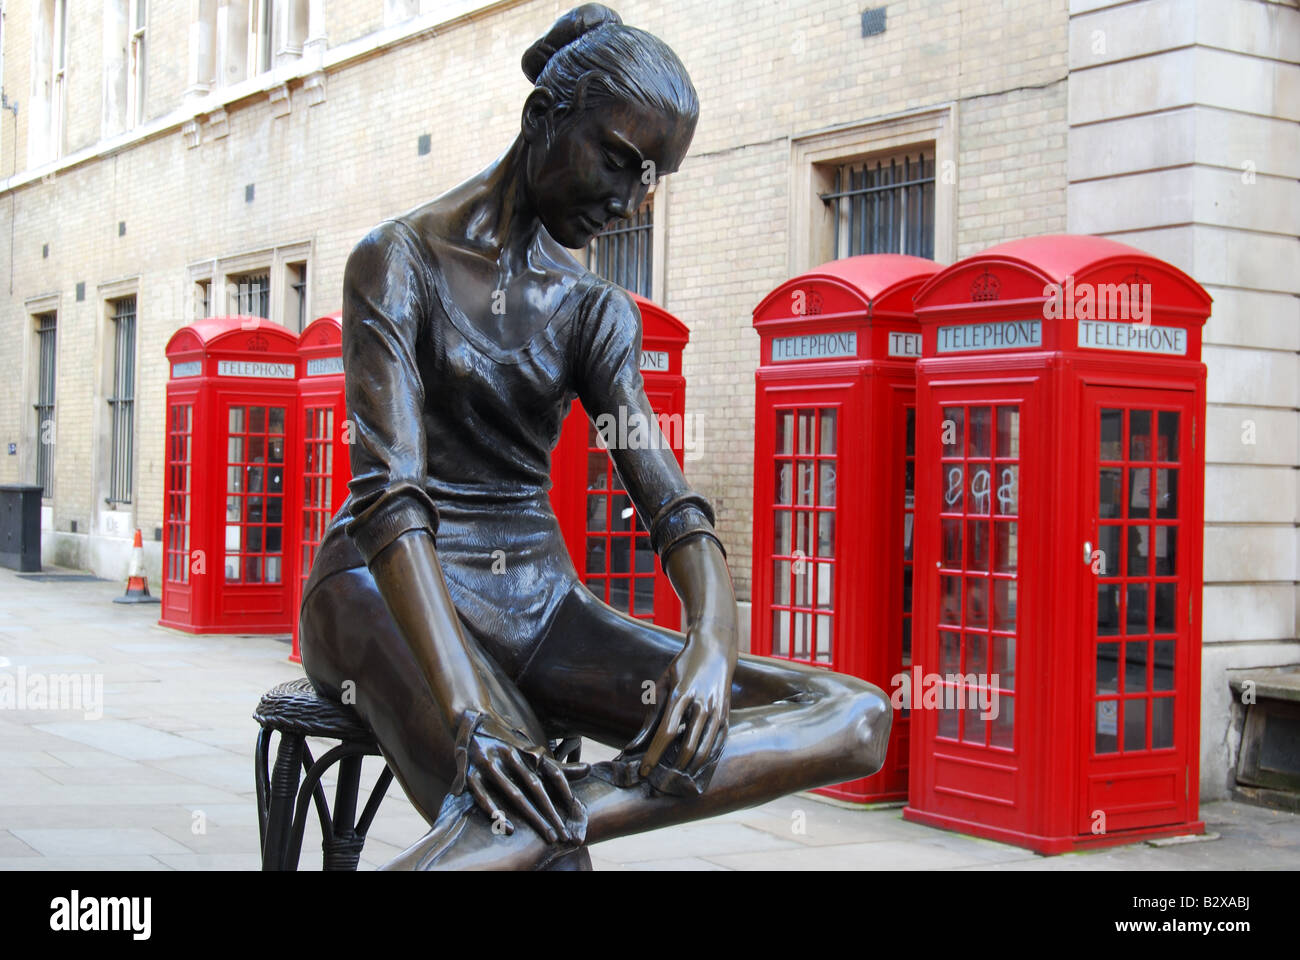 Sculpture jeune danseur par Plazzotta, vaste cour, Covent Garden, Londres, Angleterre, Royaume-Uni Banque D'Images